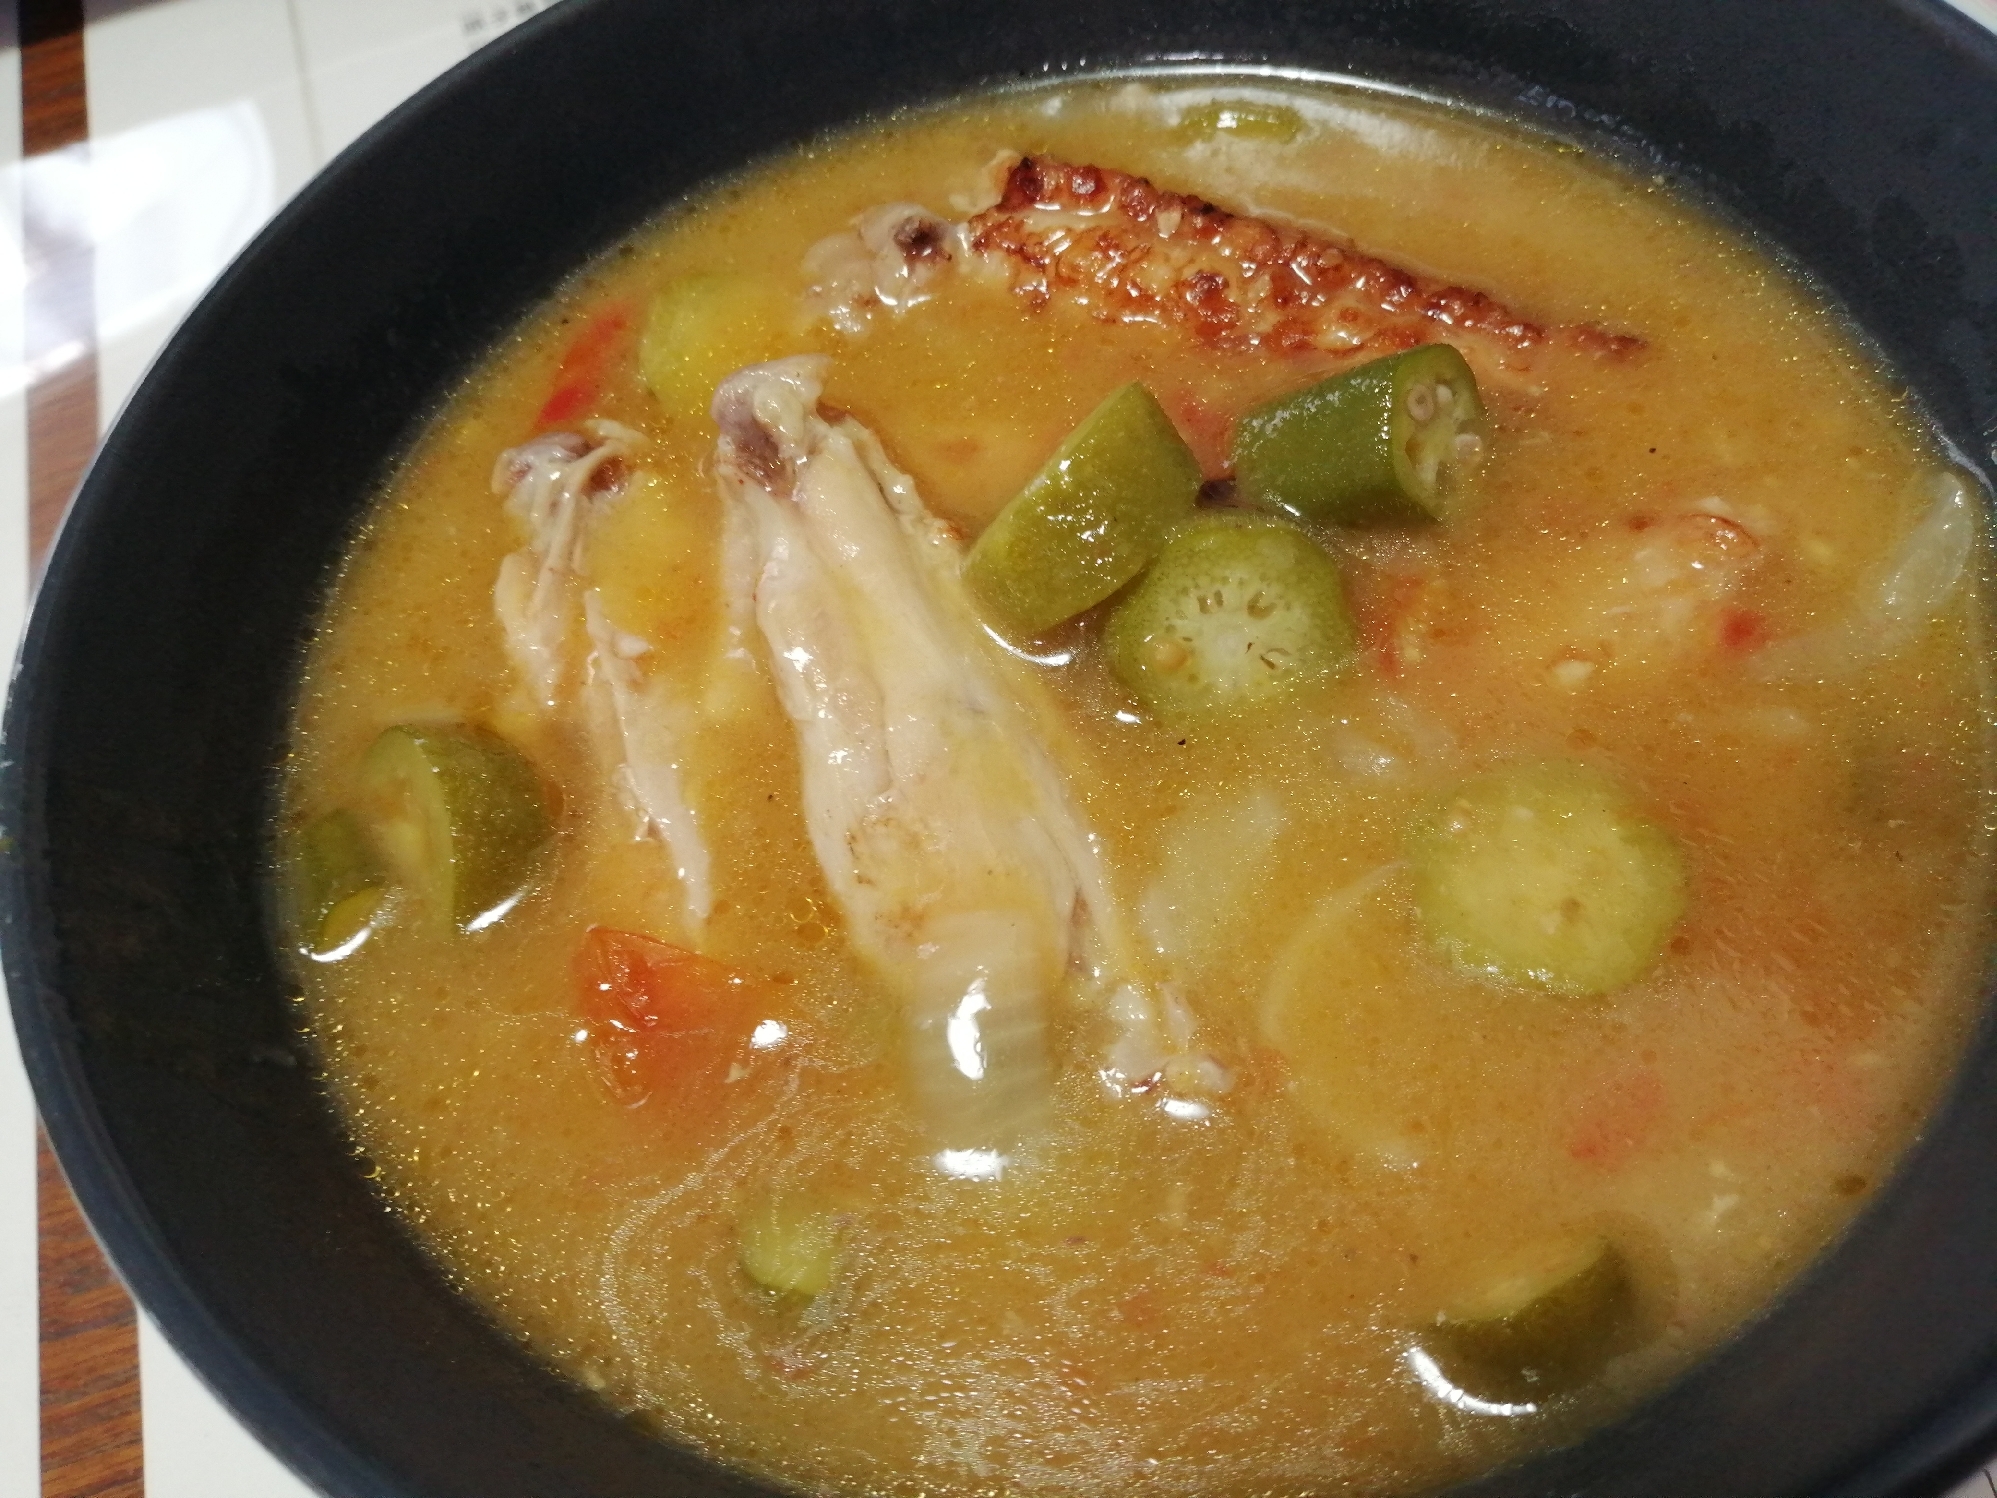 鶏とオクラのスープ